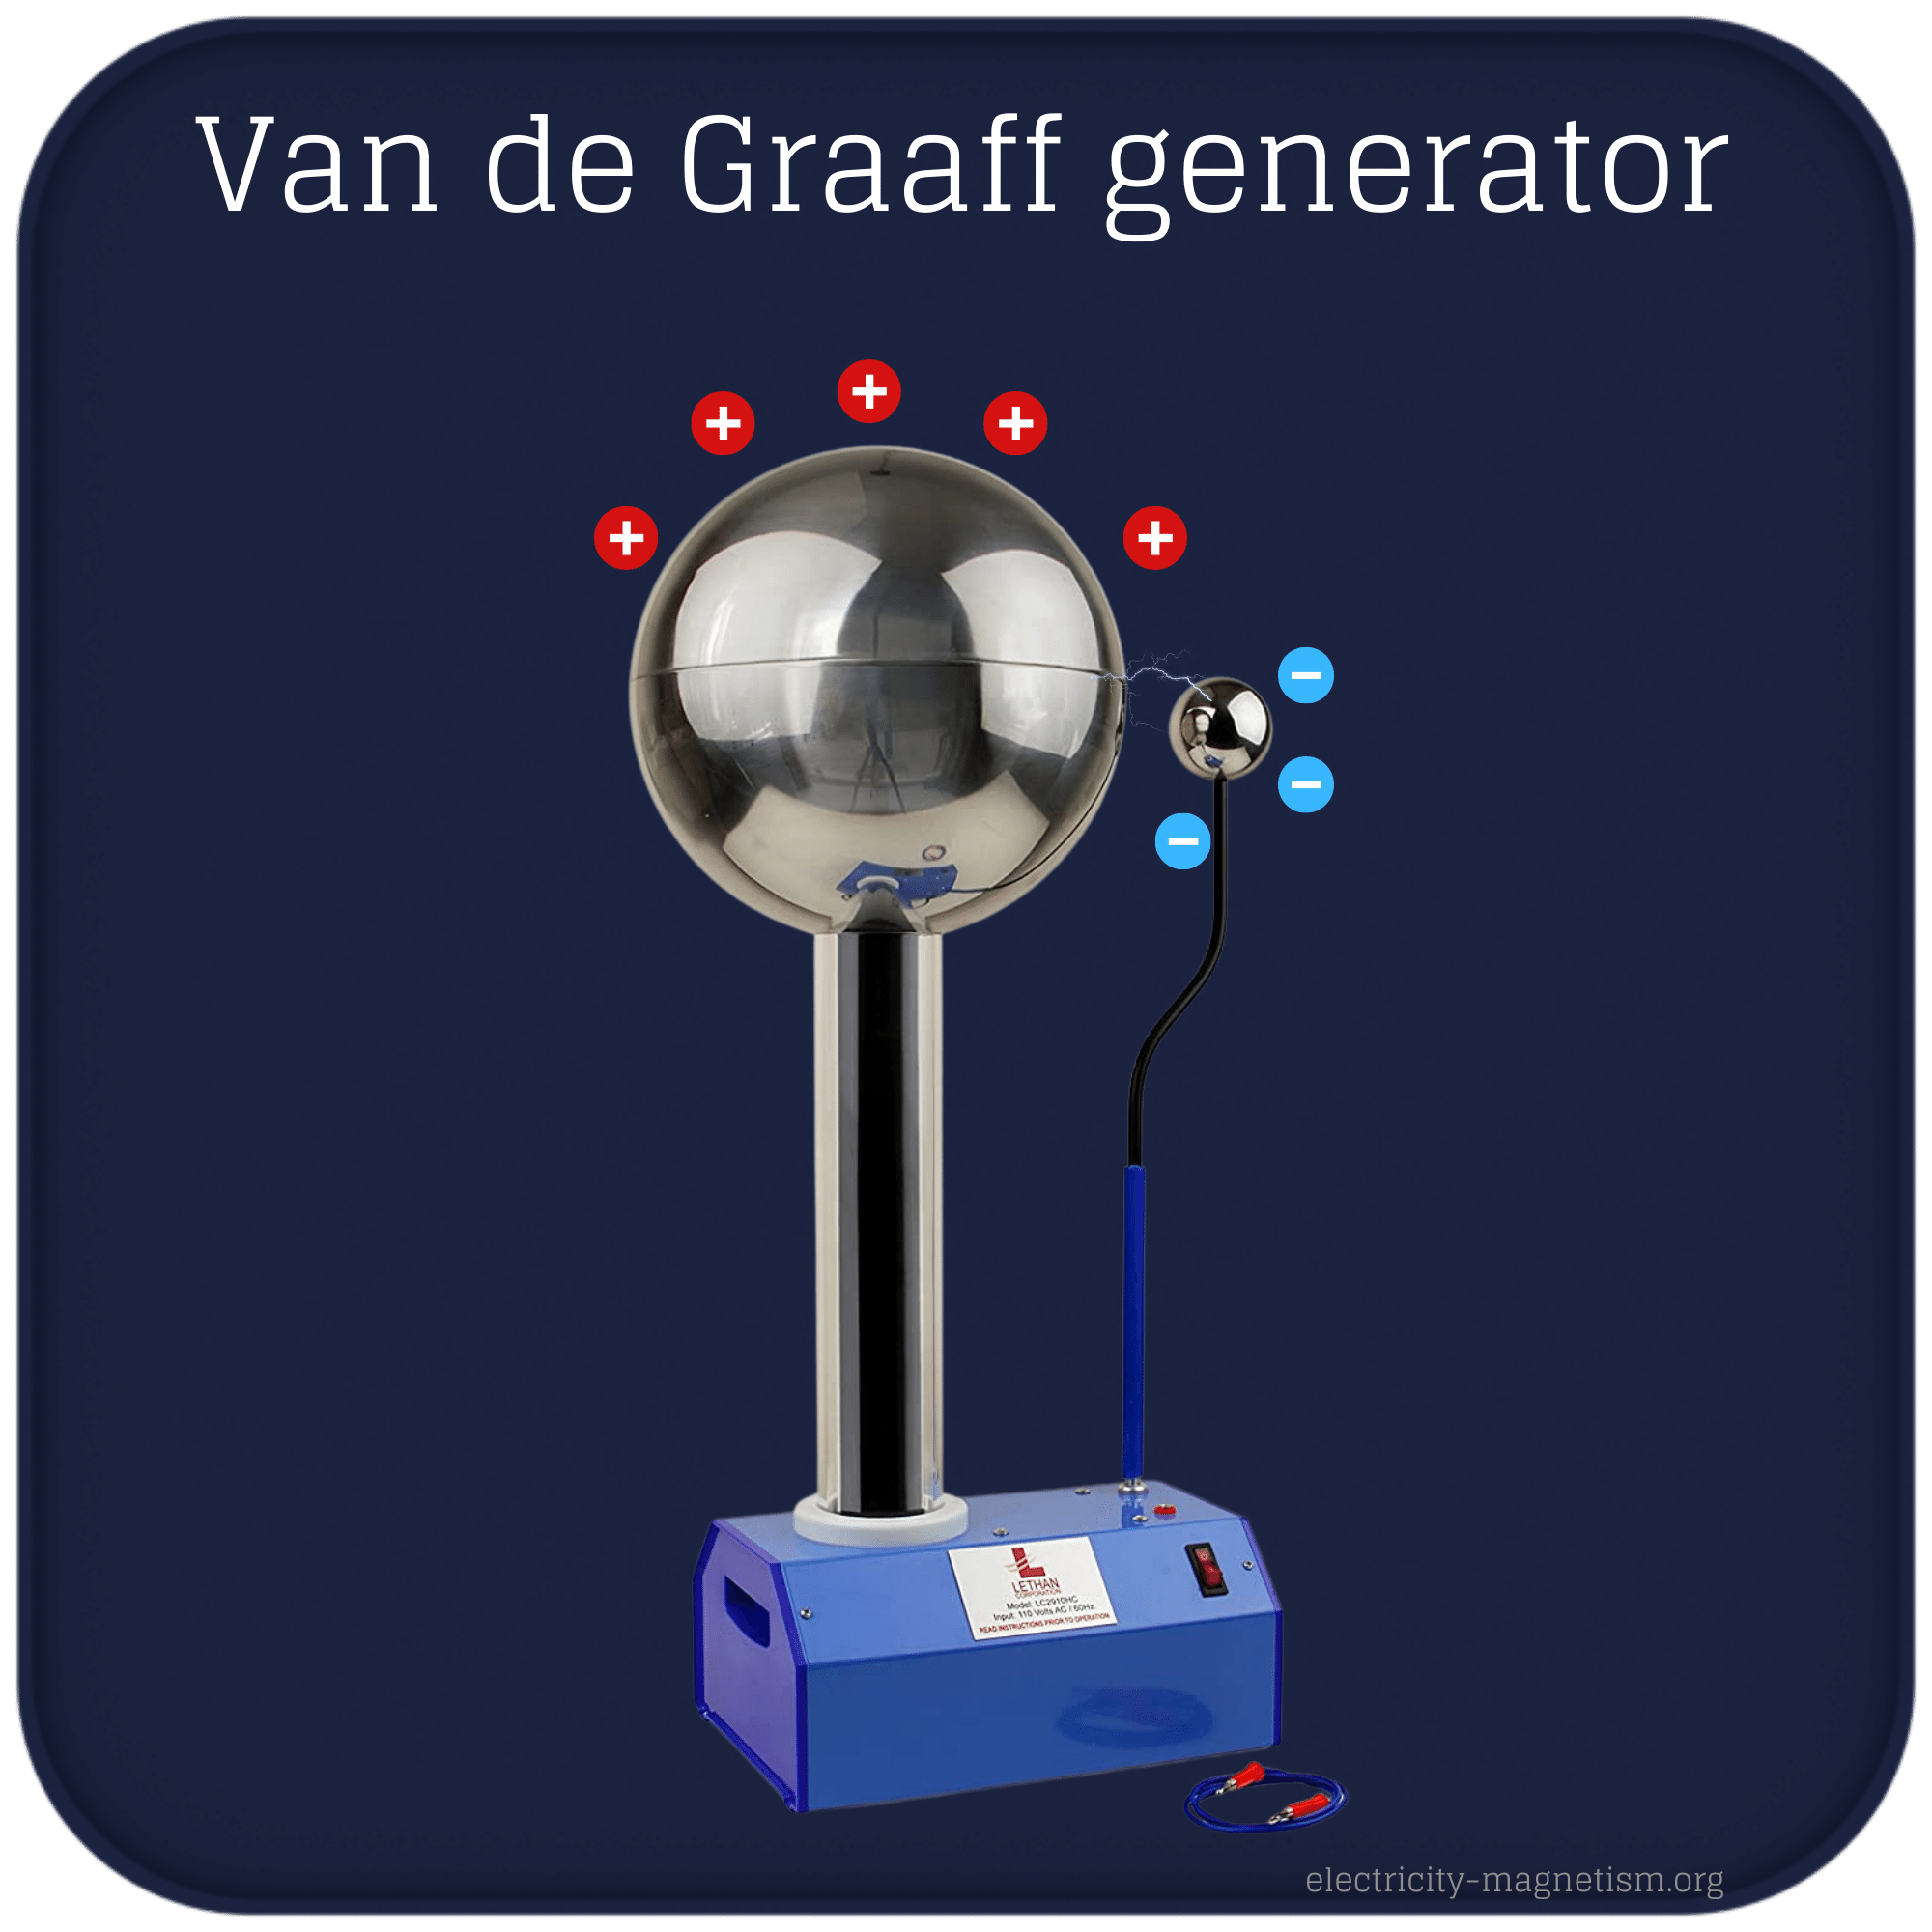 Van de Graaff generator